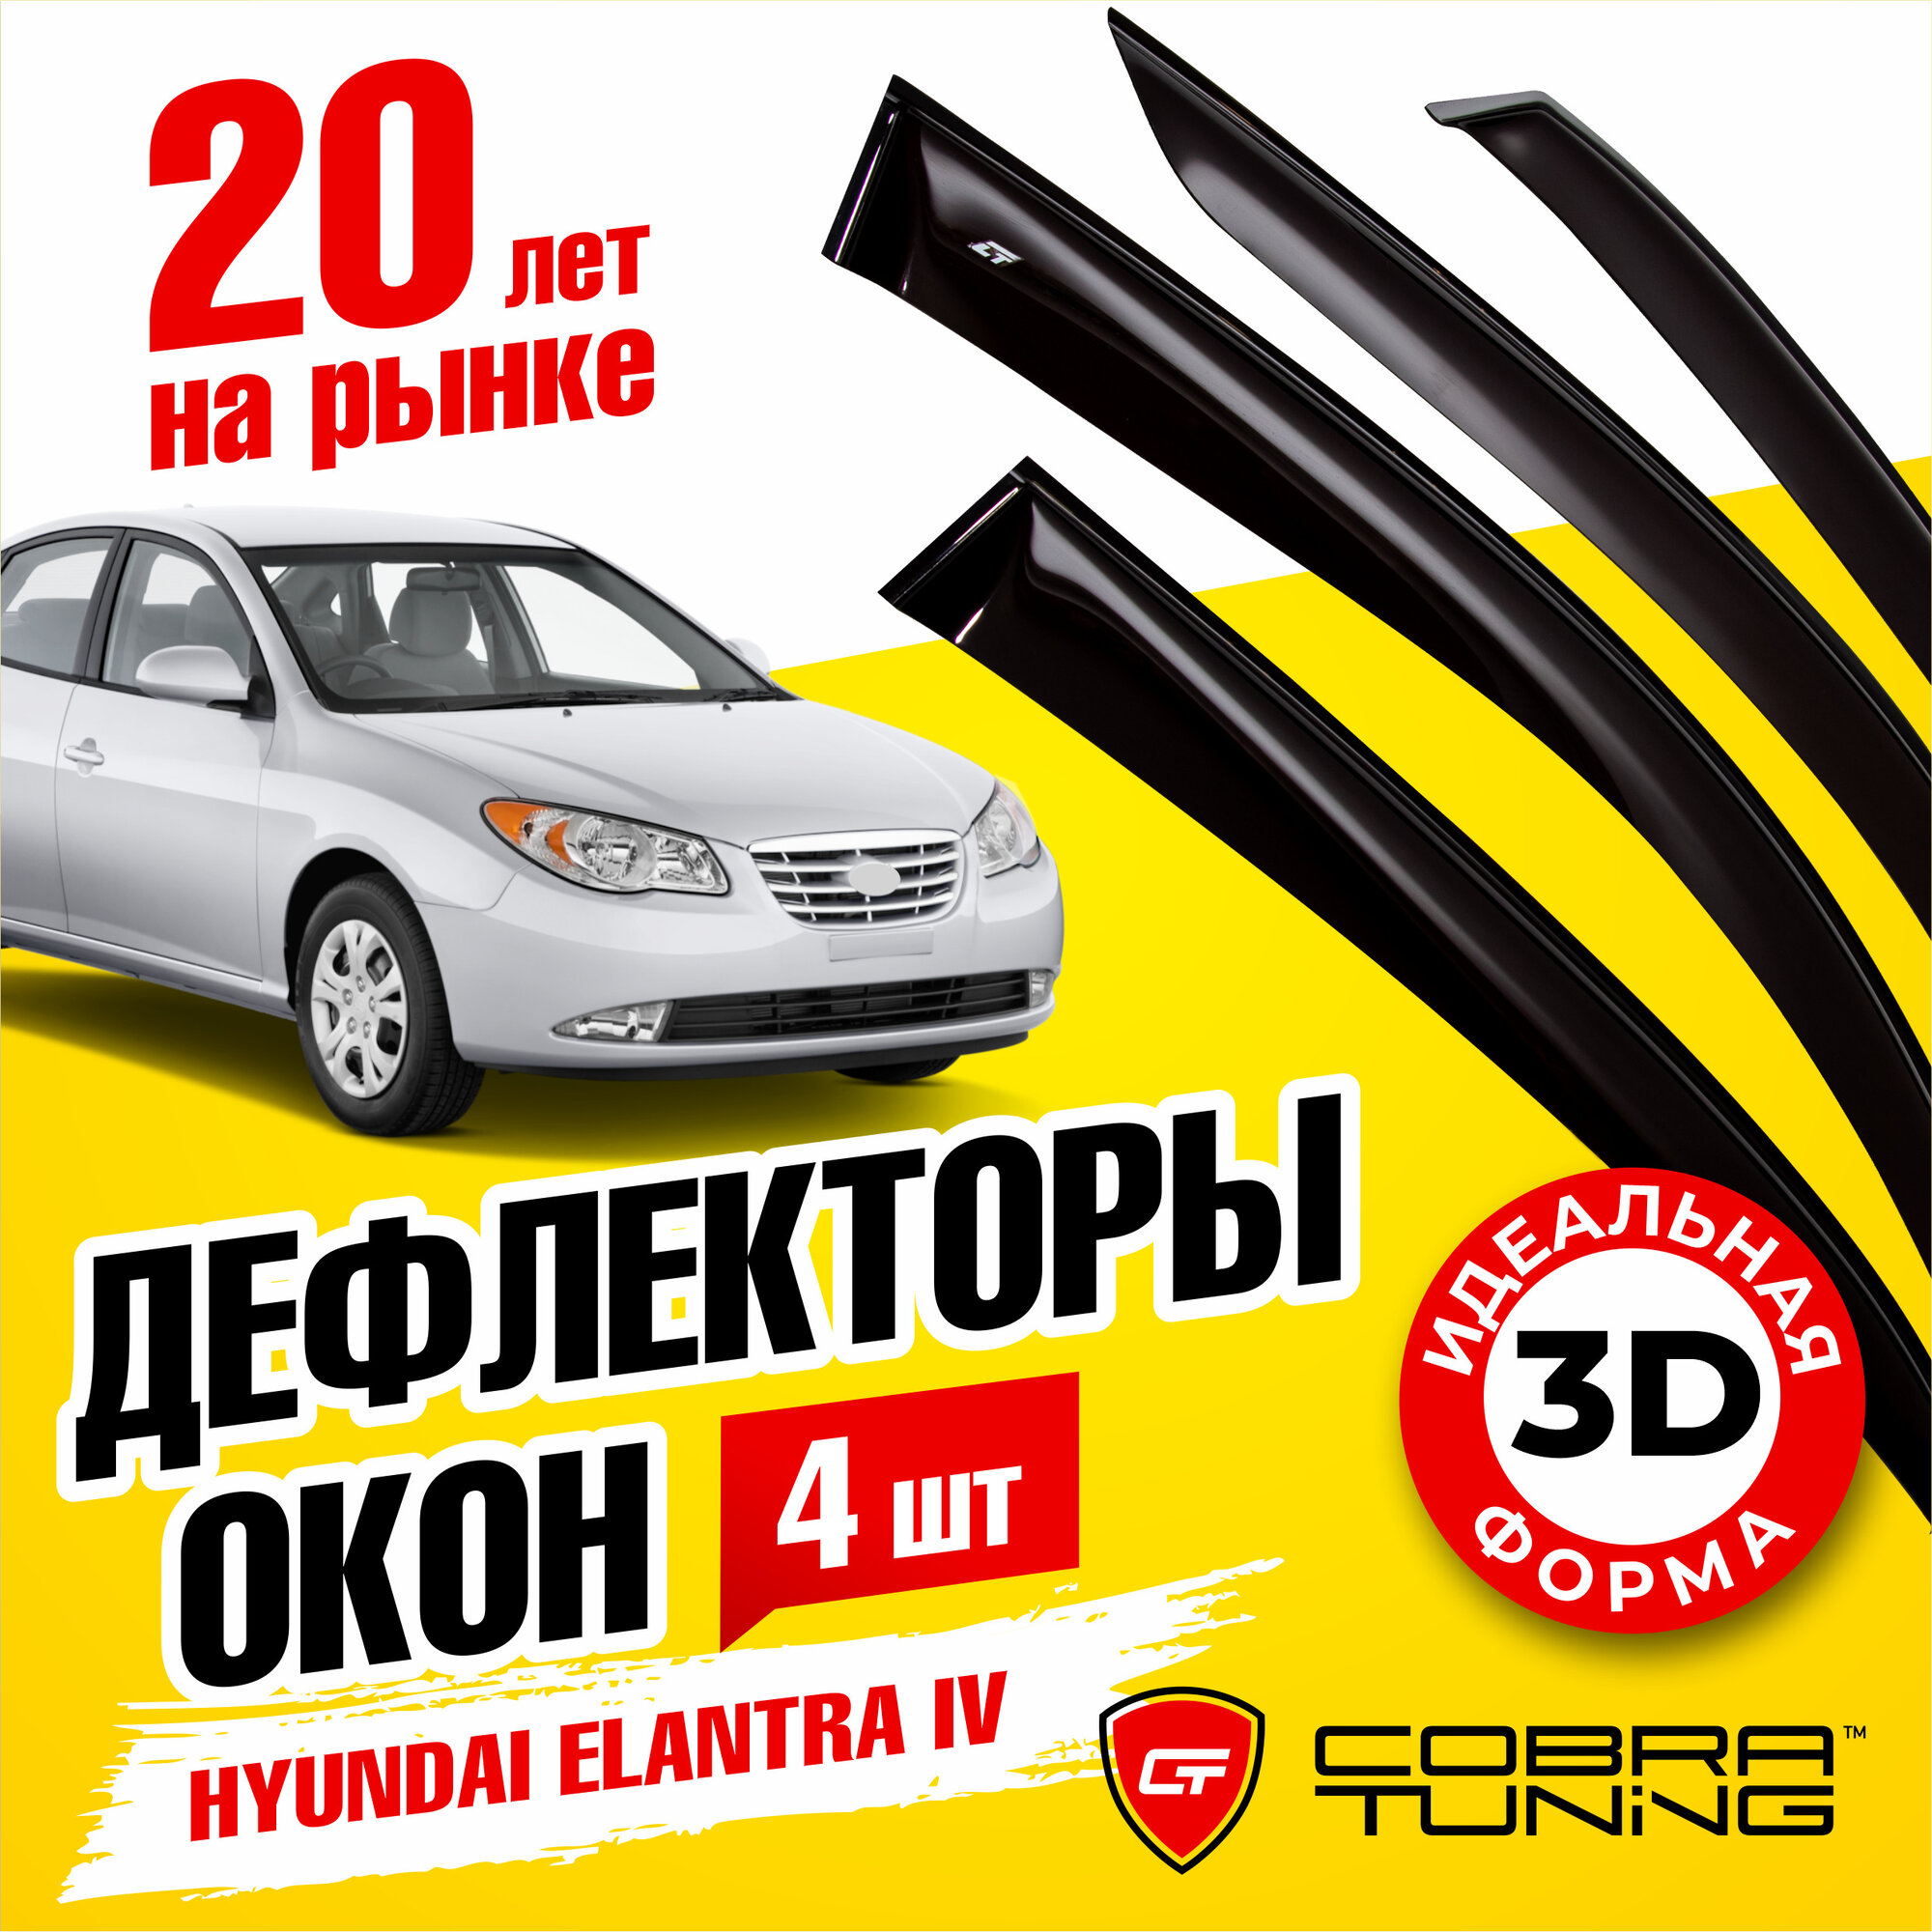 Дефлекторы боковых окон для Hyundai Elantra 4 (Хендай Элантра) седан 2007-2011, ветровики на двери автомобиля, Cobra Tuning